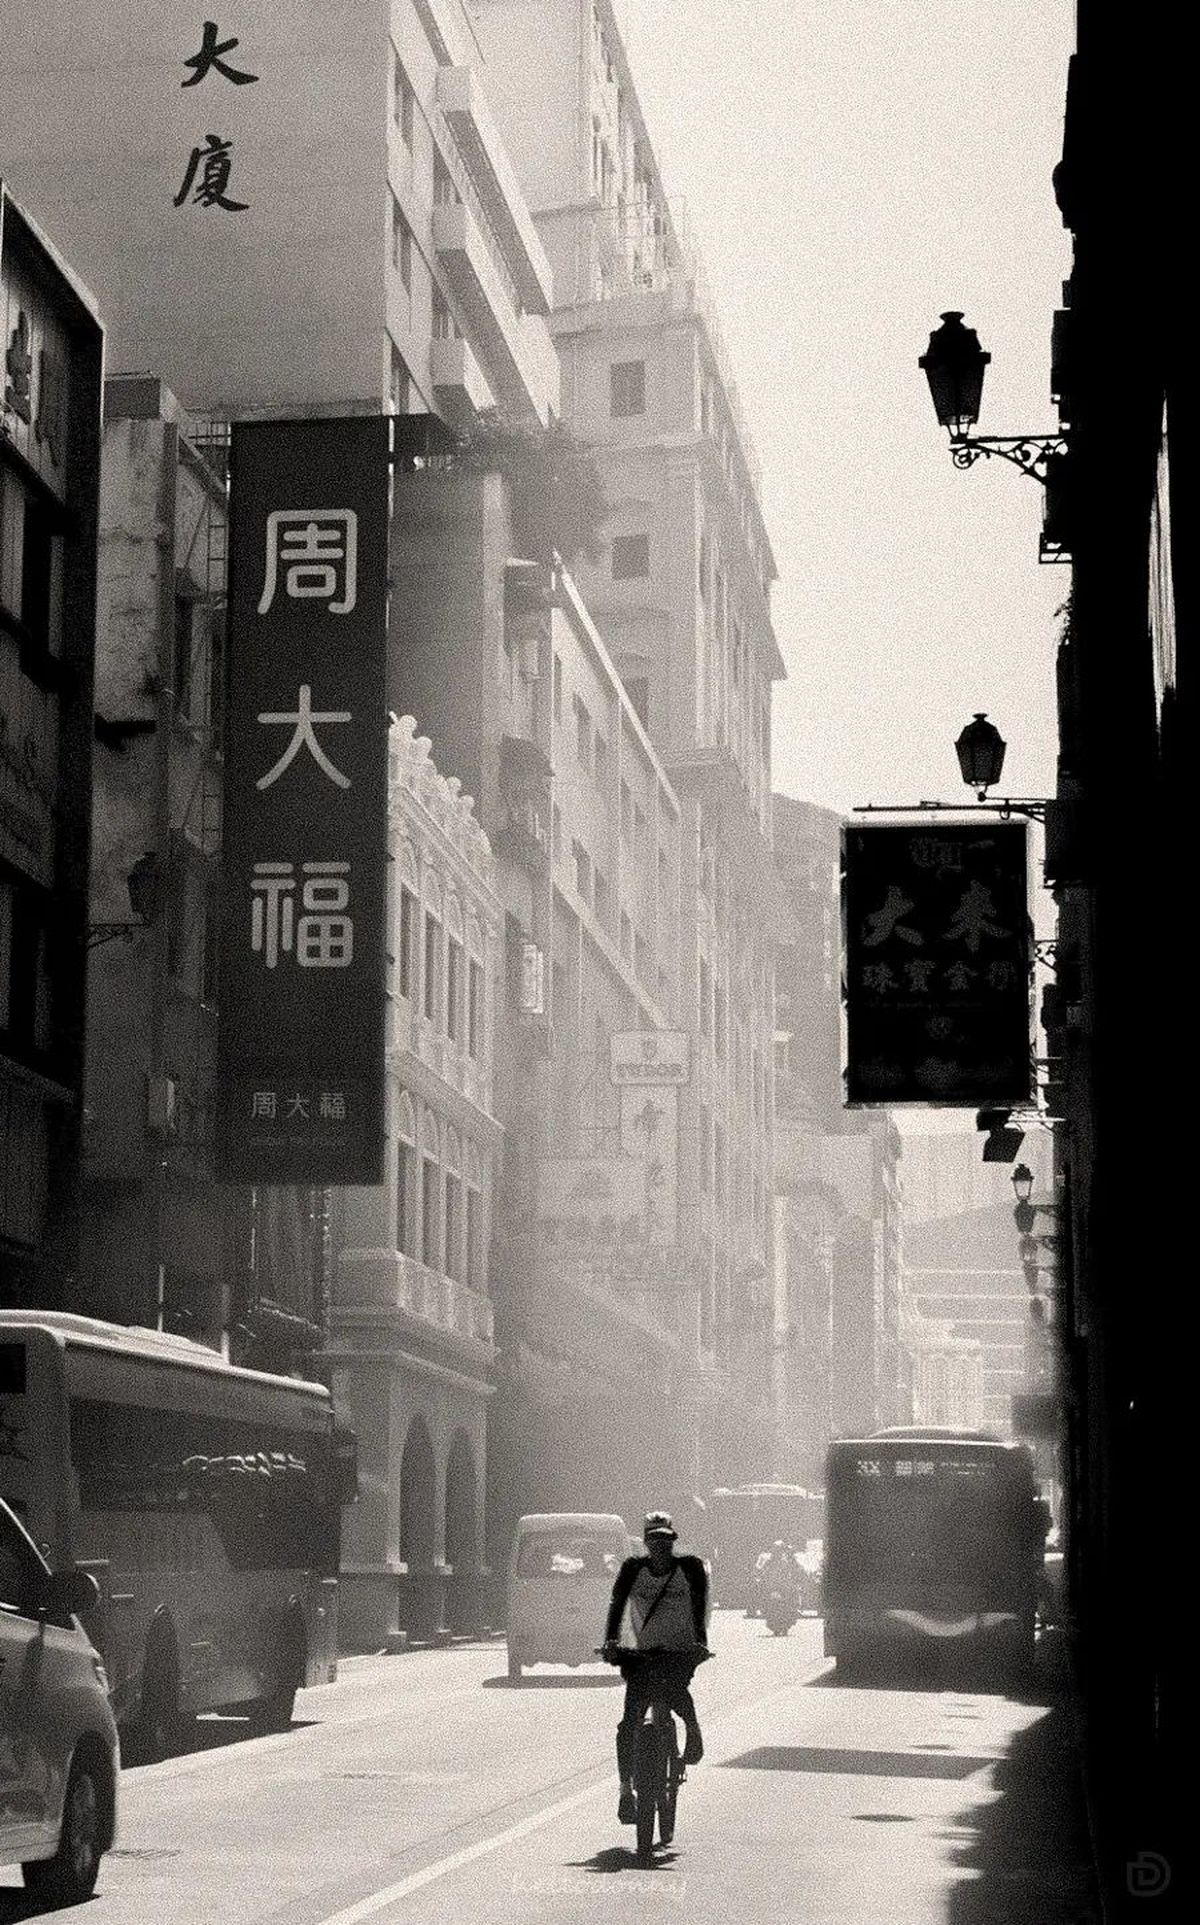 一张黑白照片 画面中有建筑物、汽车和一个人骑自行车穿过街道。